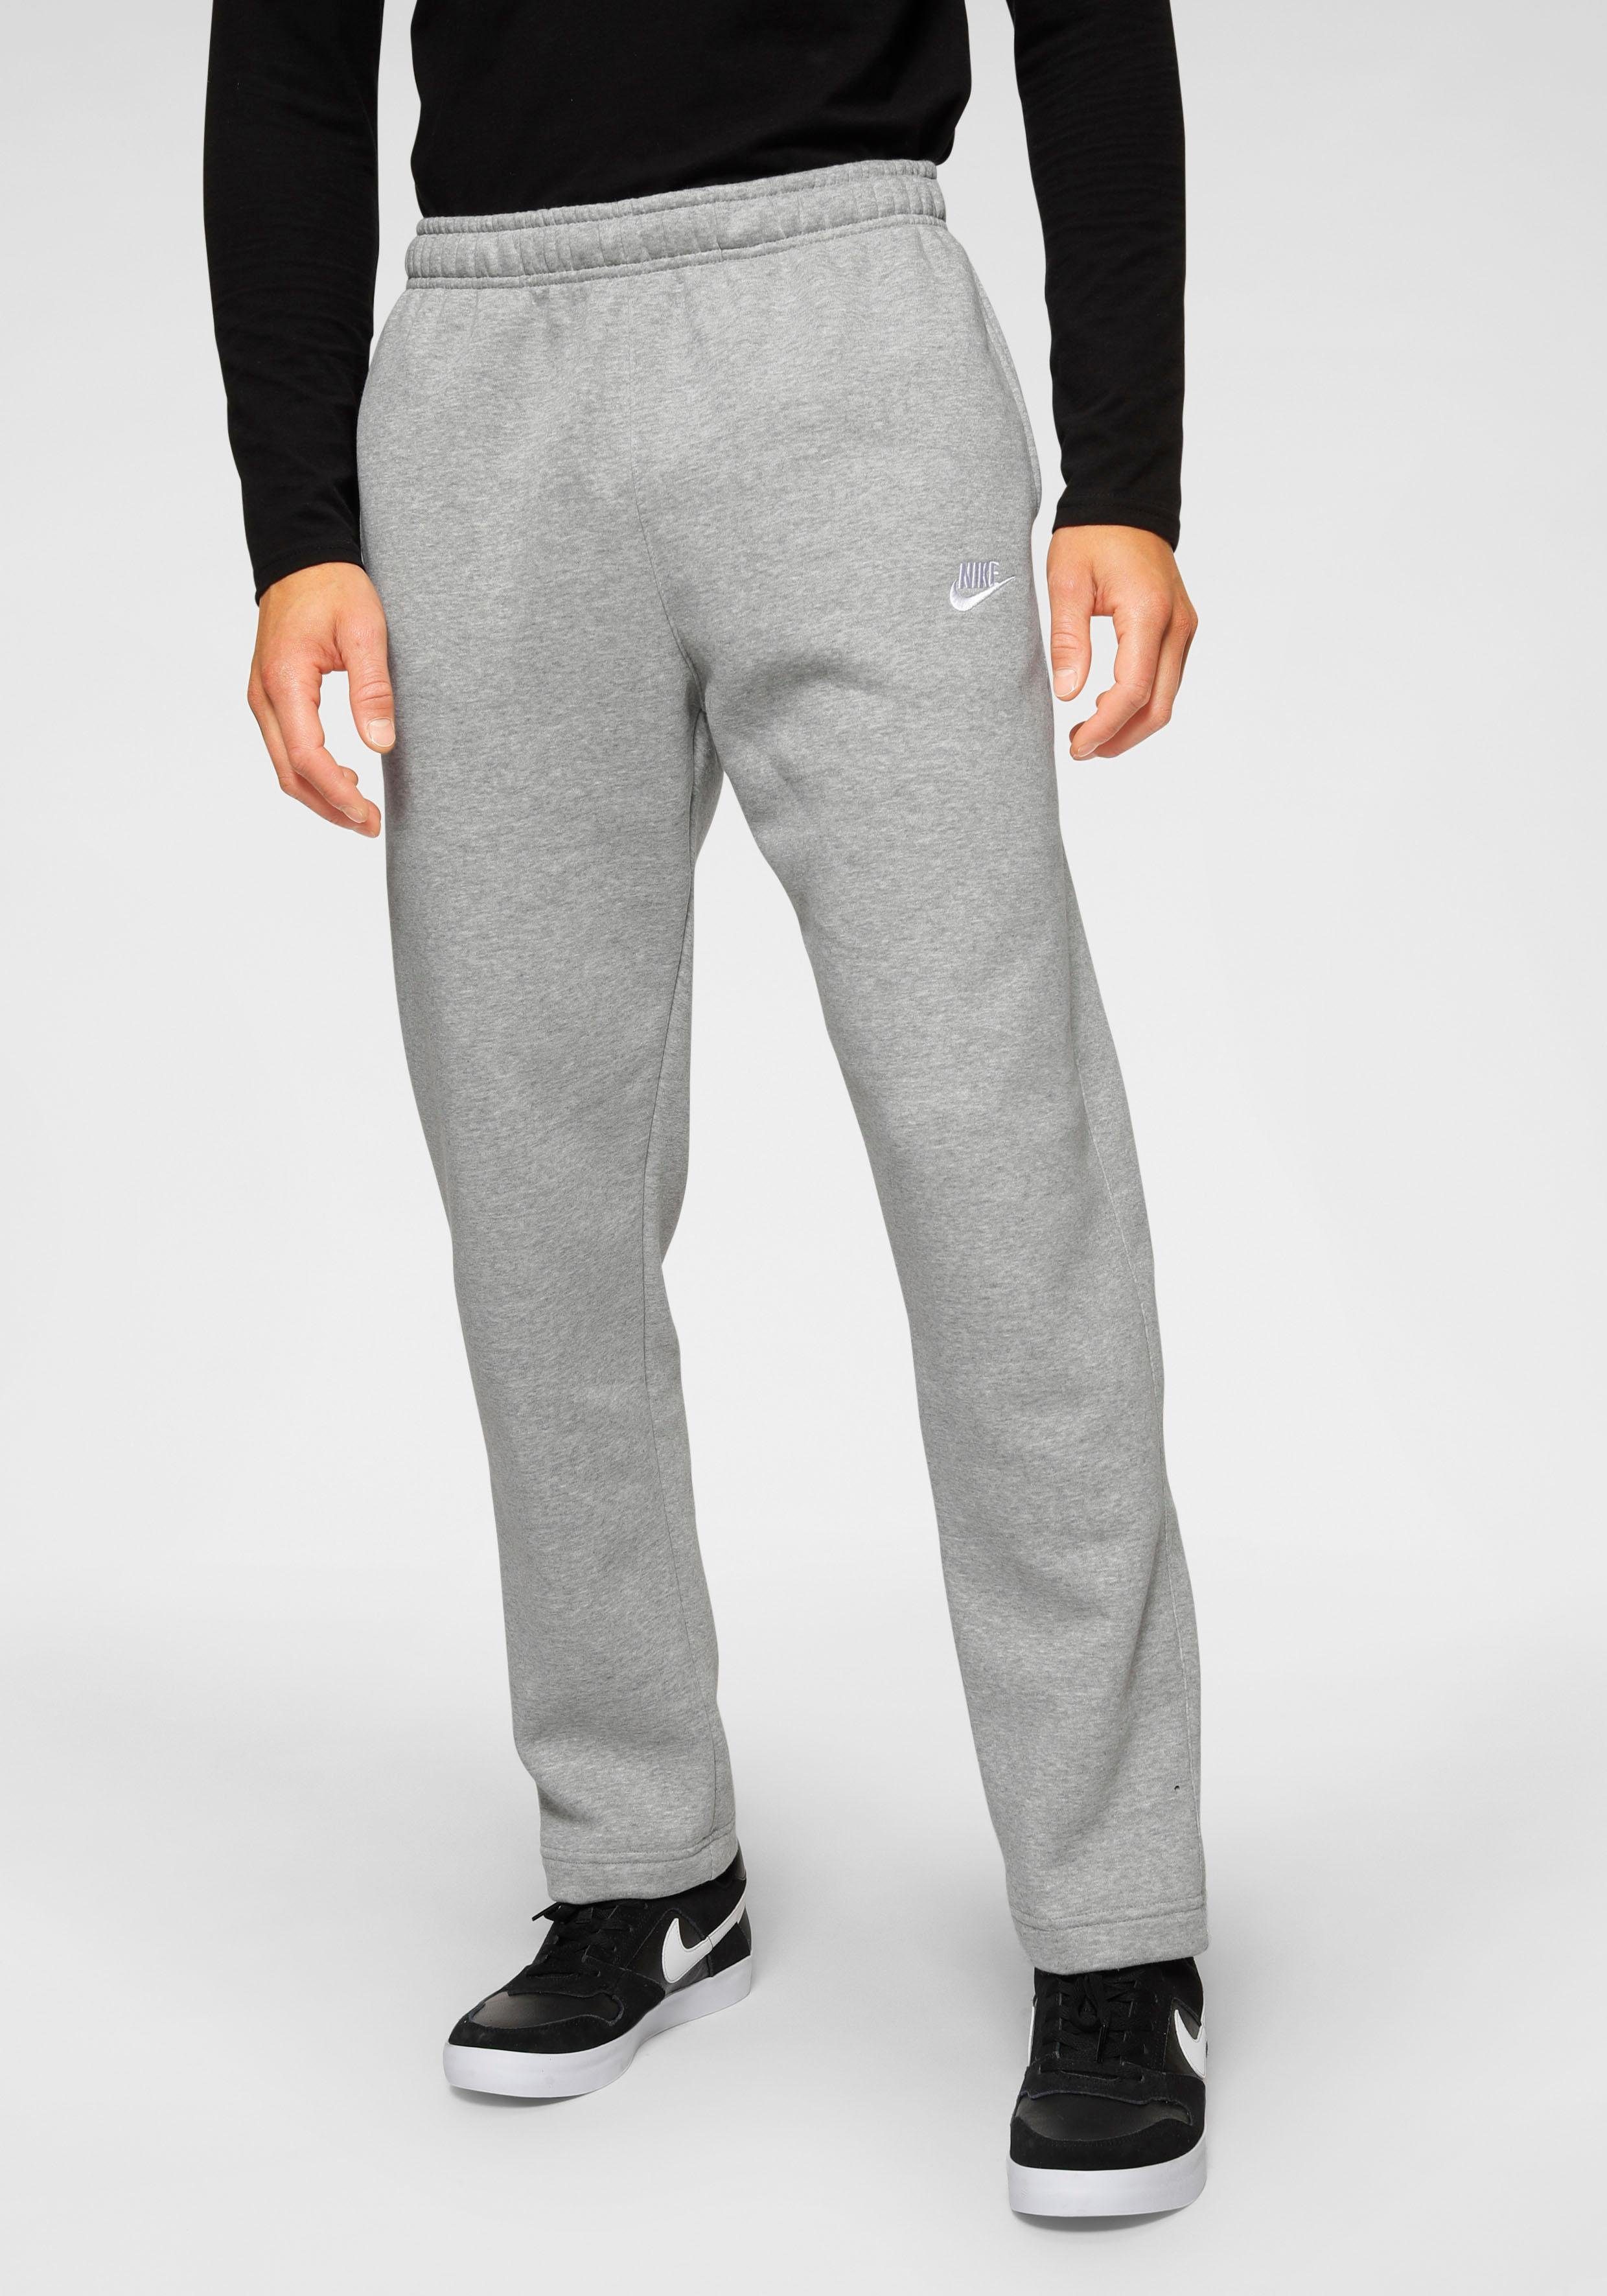 Nike Sportswear Jogginghose »Club Fleece Men's Pants« online kaufen | OTTO